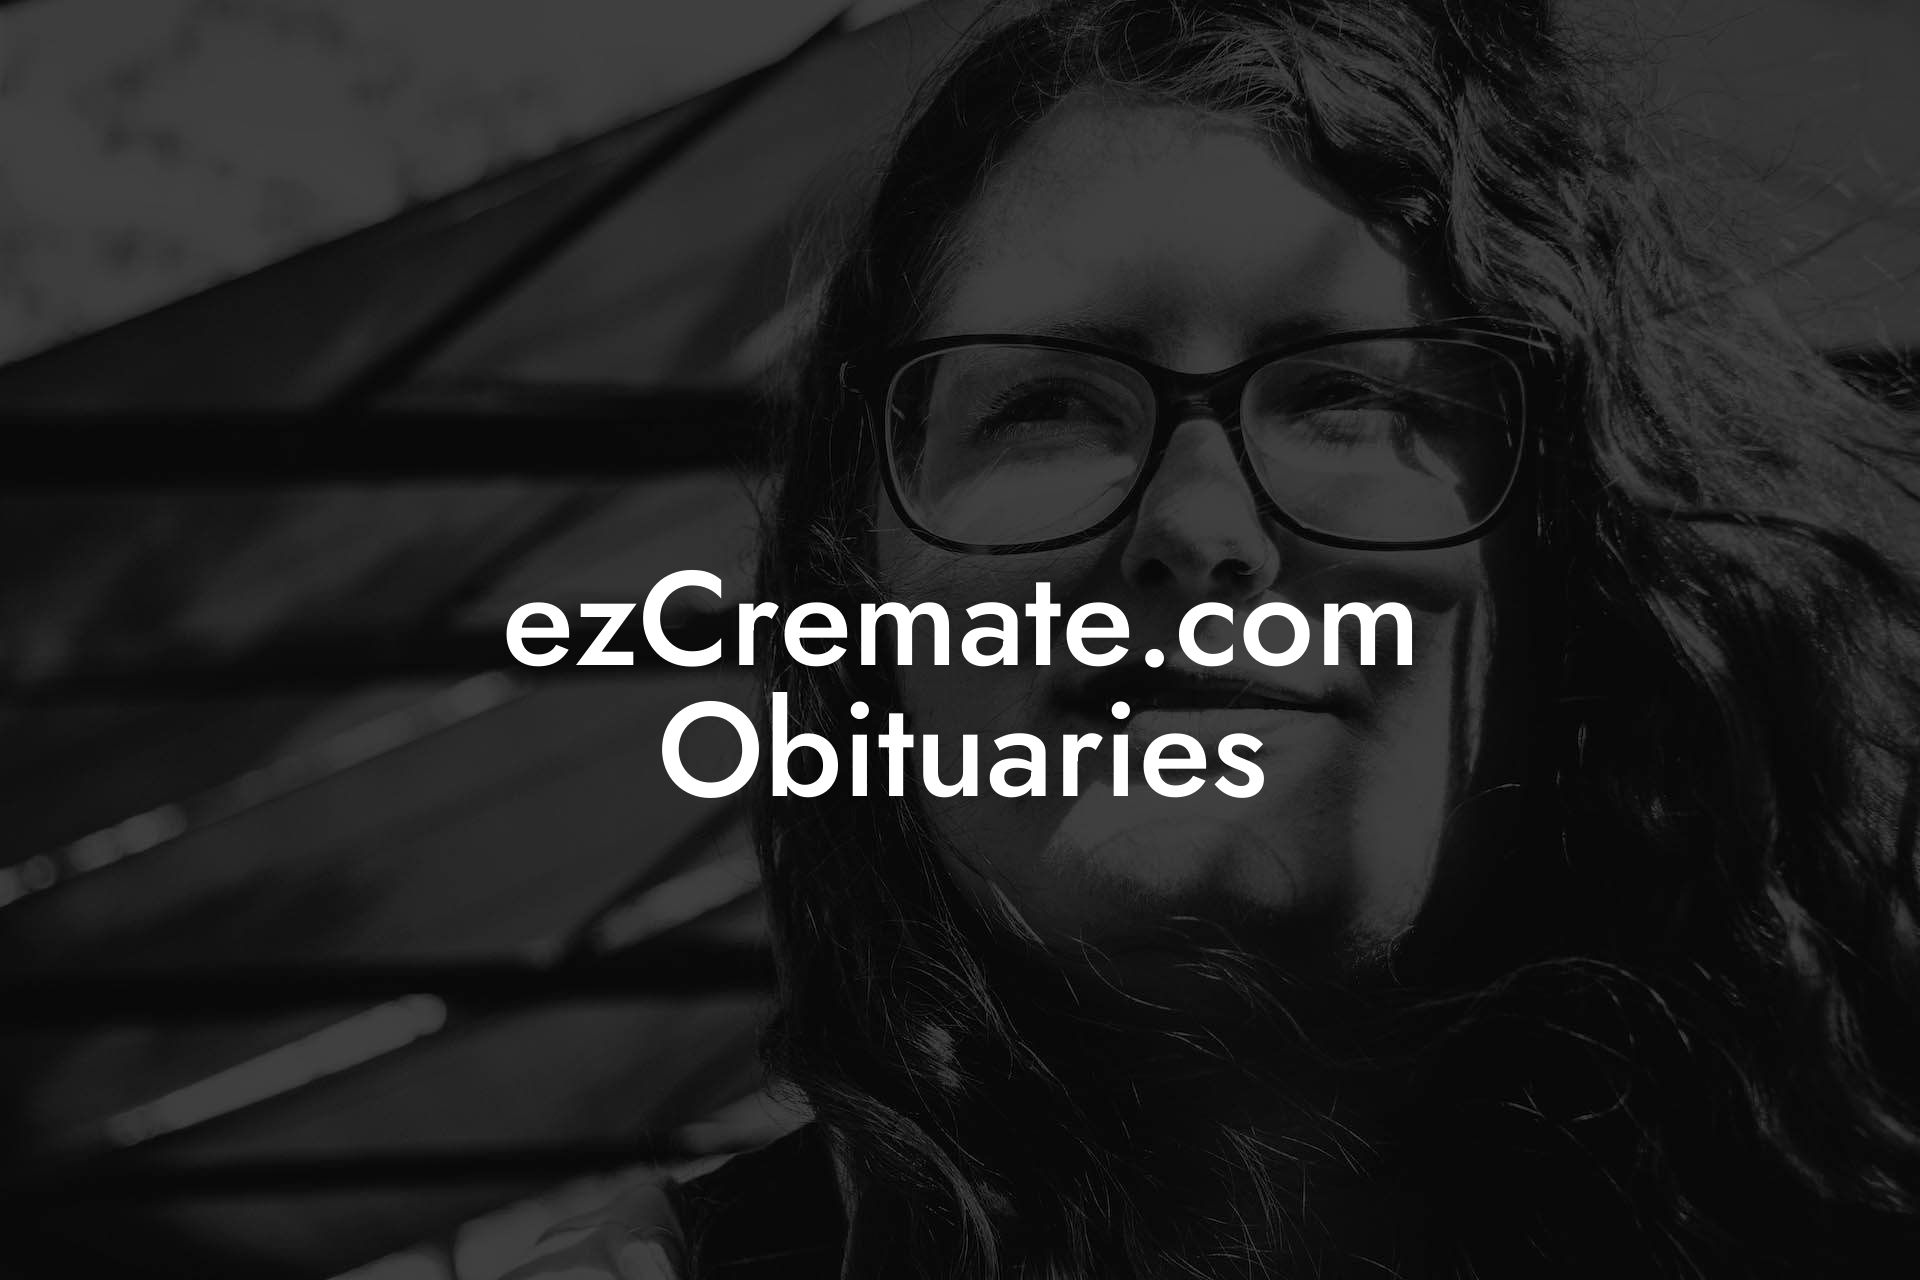 ezCremate.com Obituaries